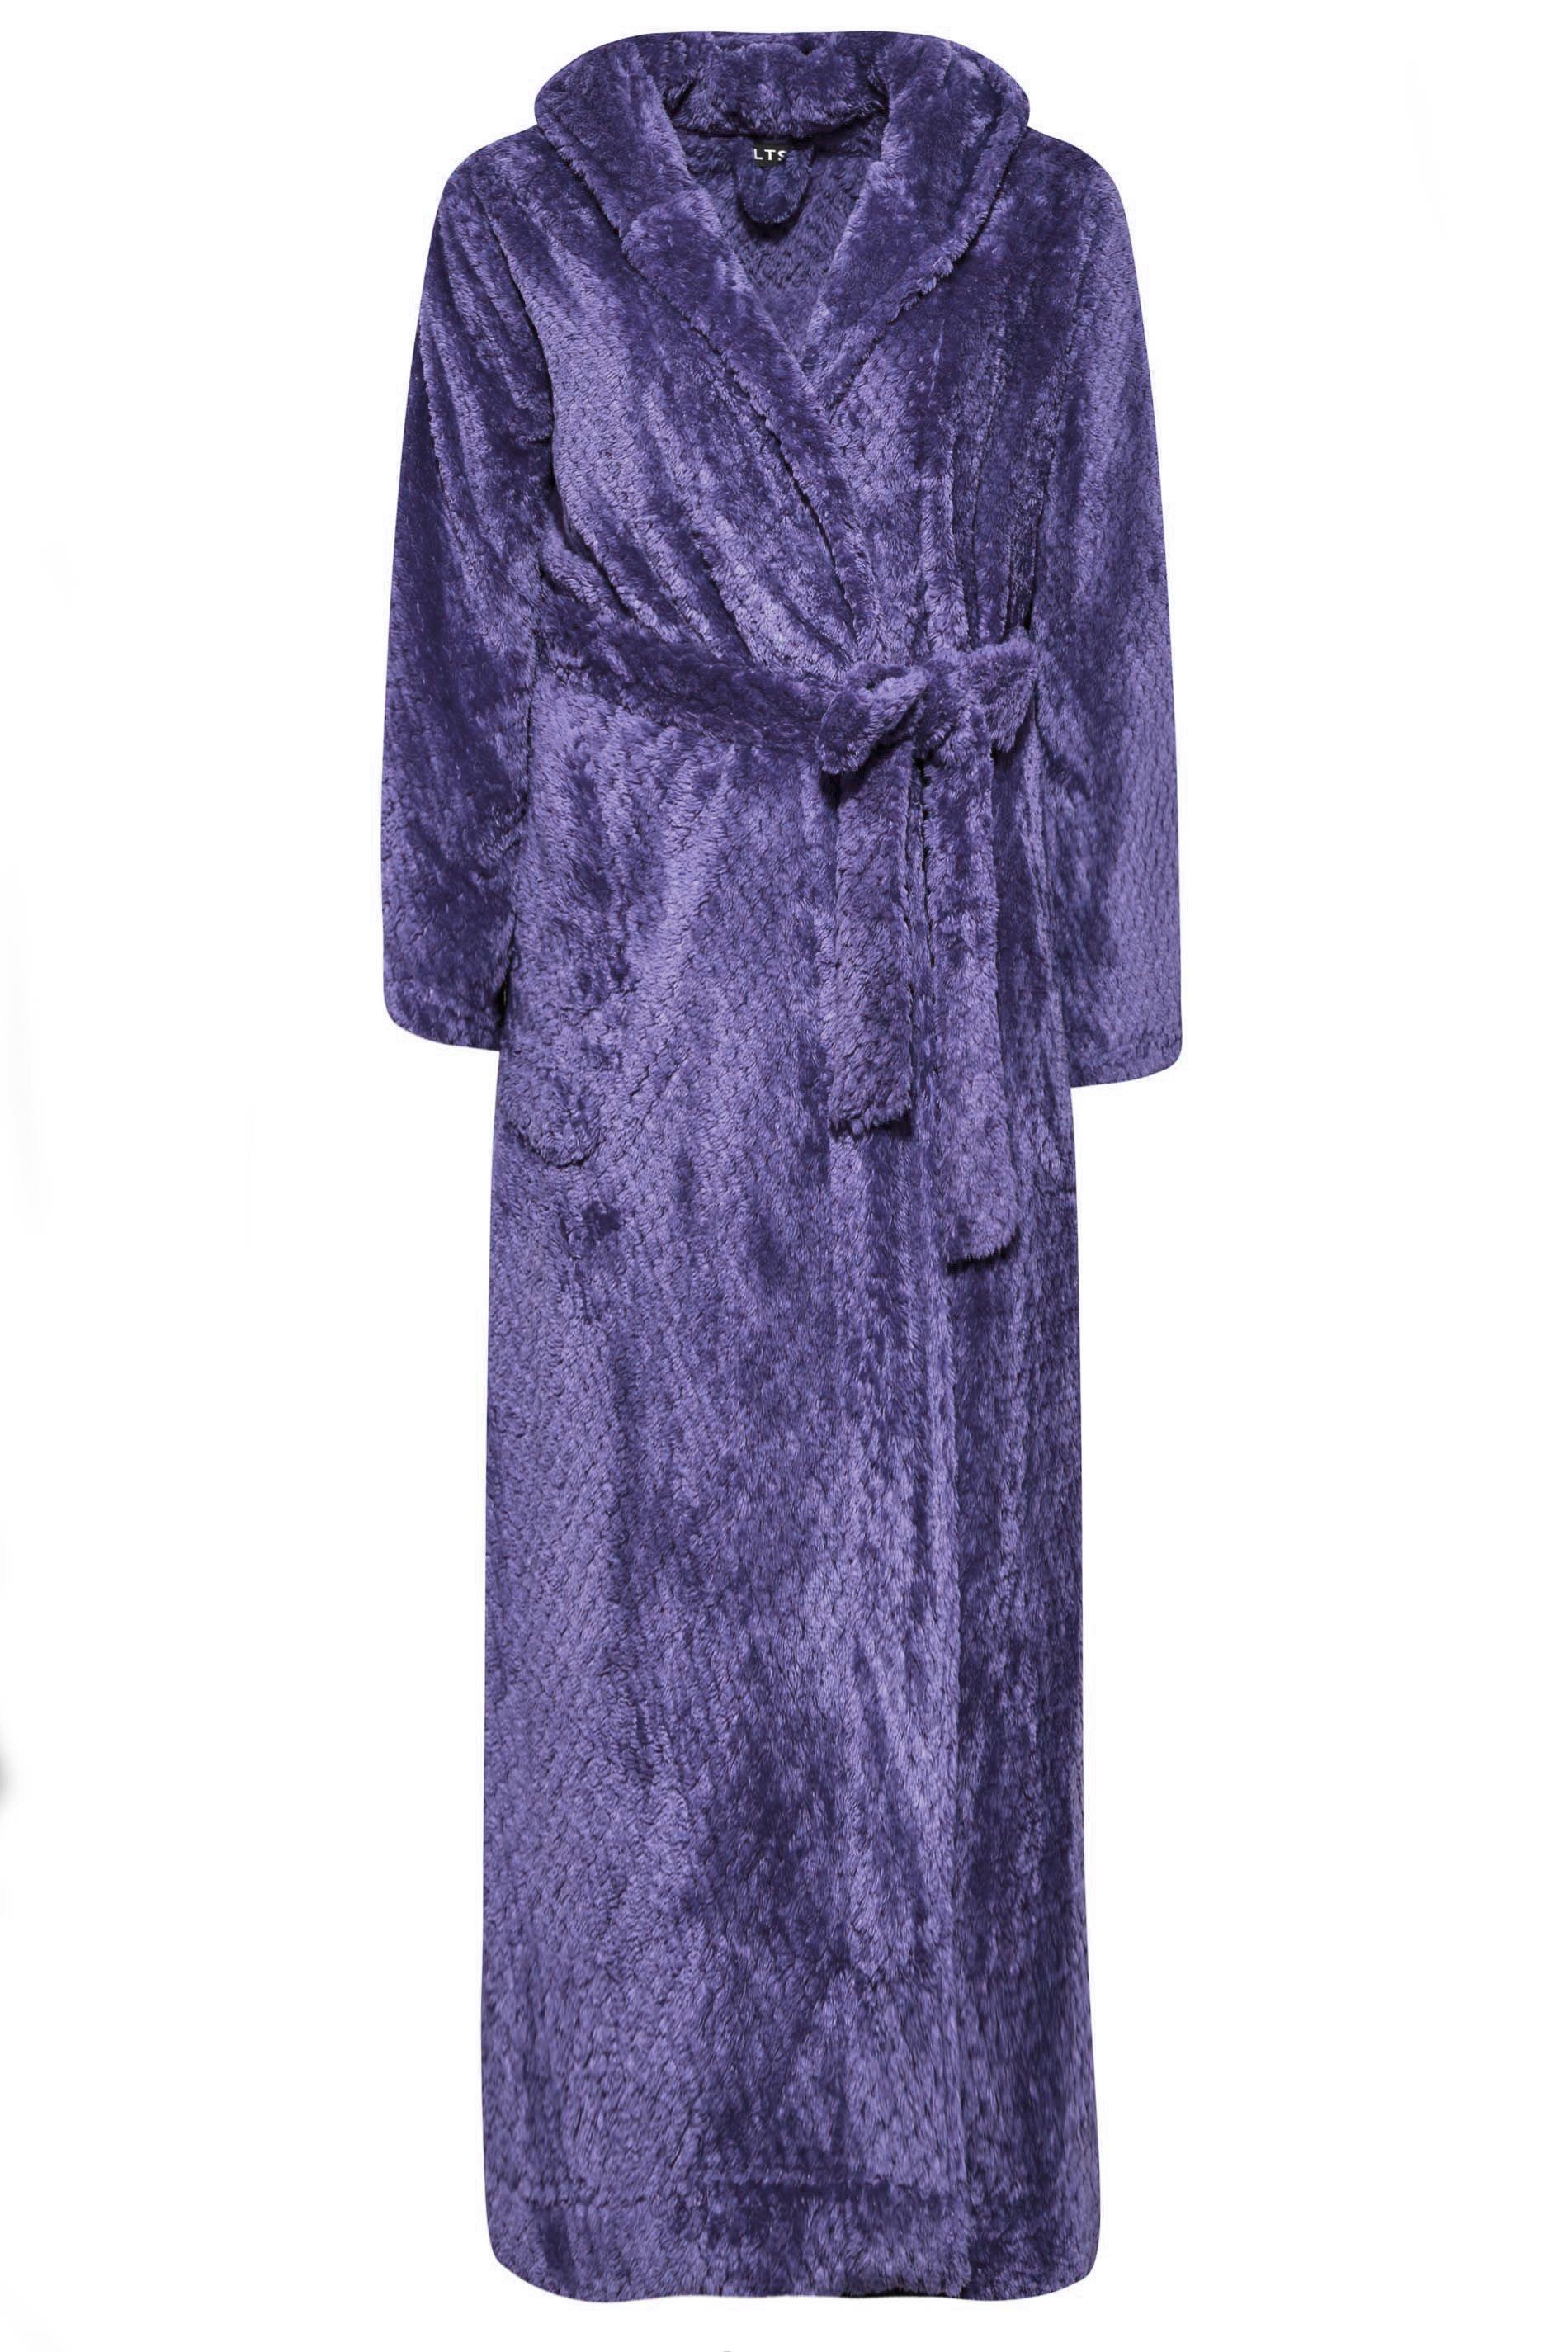 Mens Womens Fleece Waffle Long Purple Robe Luxury Lightweight Dressing Gown  Warm | eBay